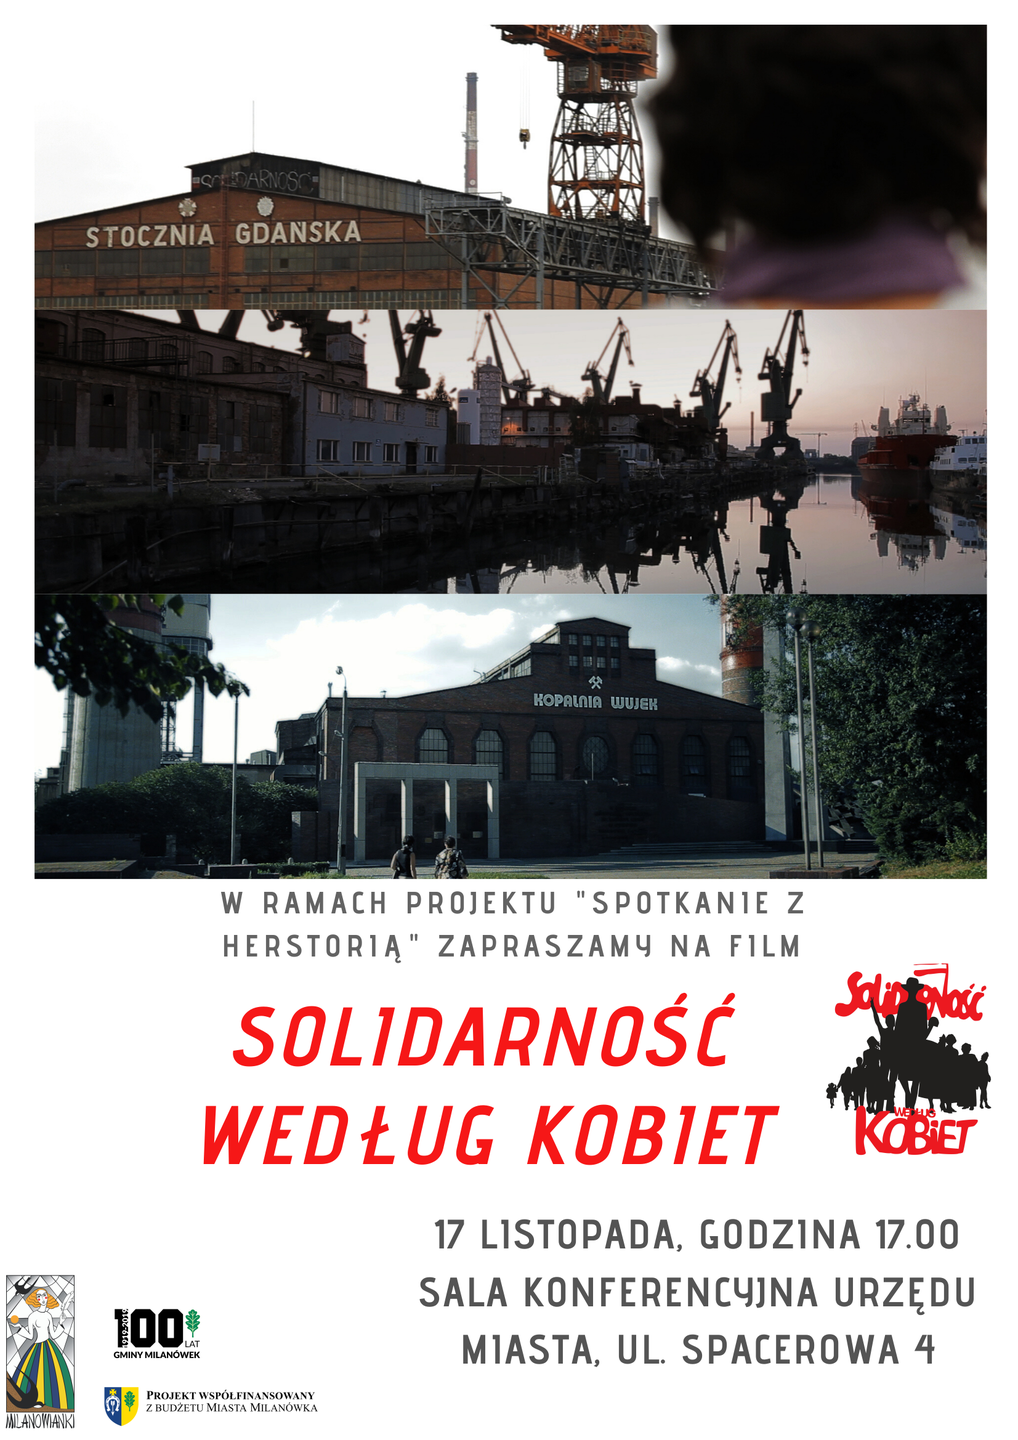 Plakat promujący pokaz filmu "Solidarność według kobiet"